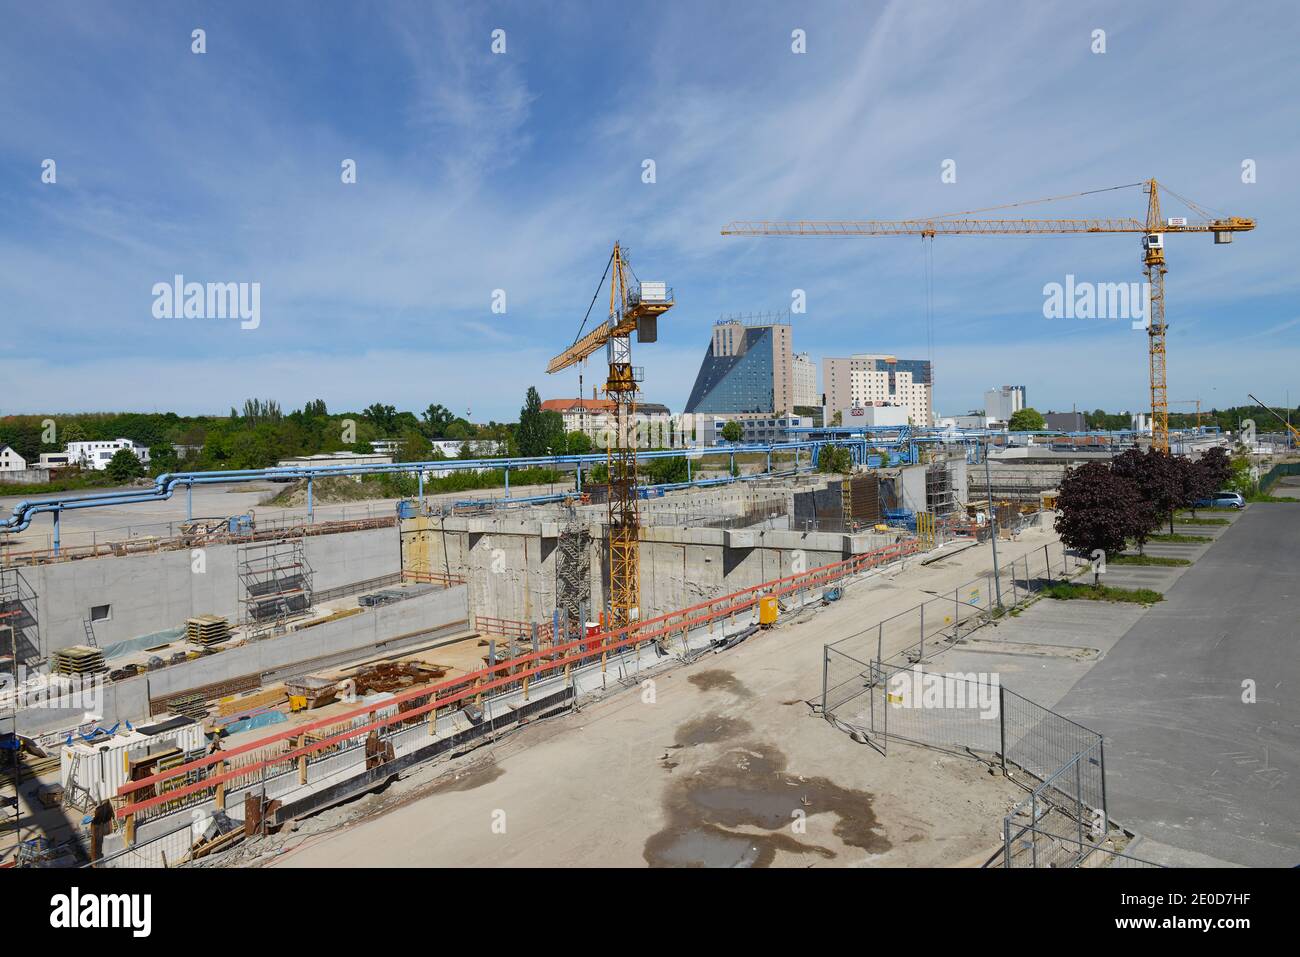 Bauarbeiten, Verlaengerung, Autobahn, A 100, Grenzallee, Treptow, Berlin, Deutschland Stock Photo